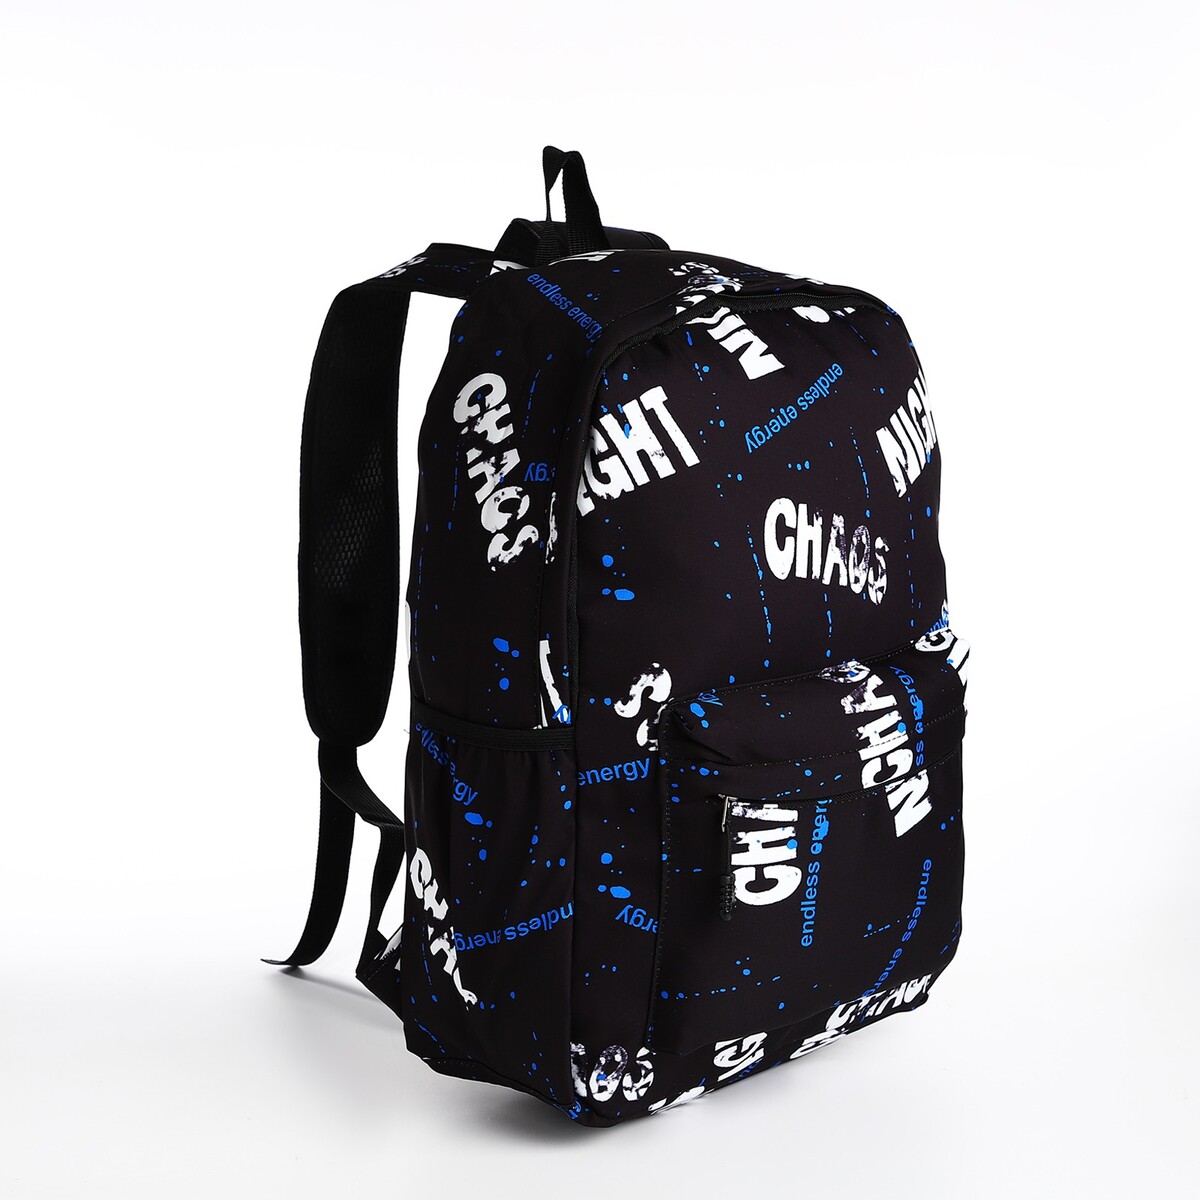 Рюкзак молодежный из текстиля на молнии, 3 кармана, цвет черный/синий